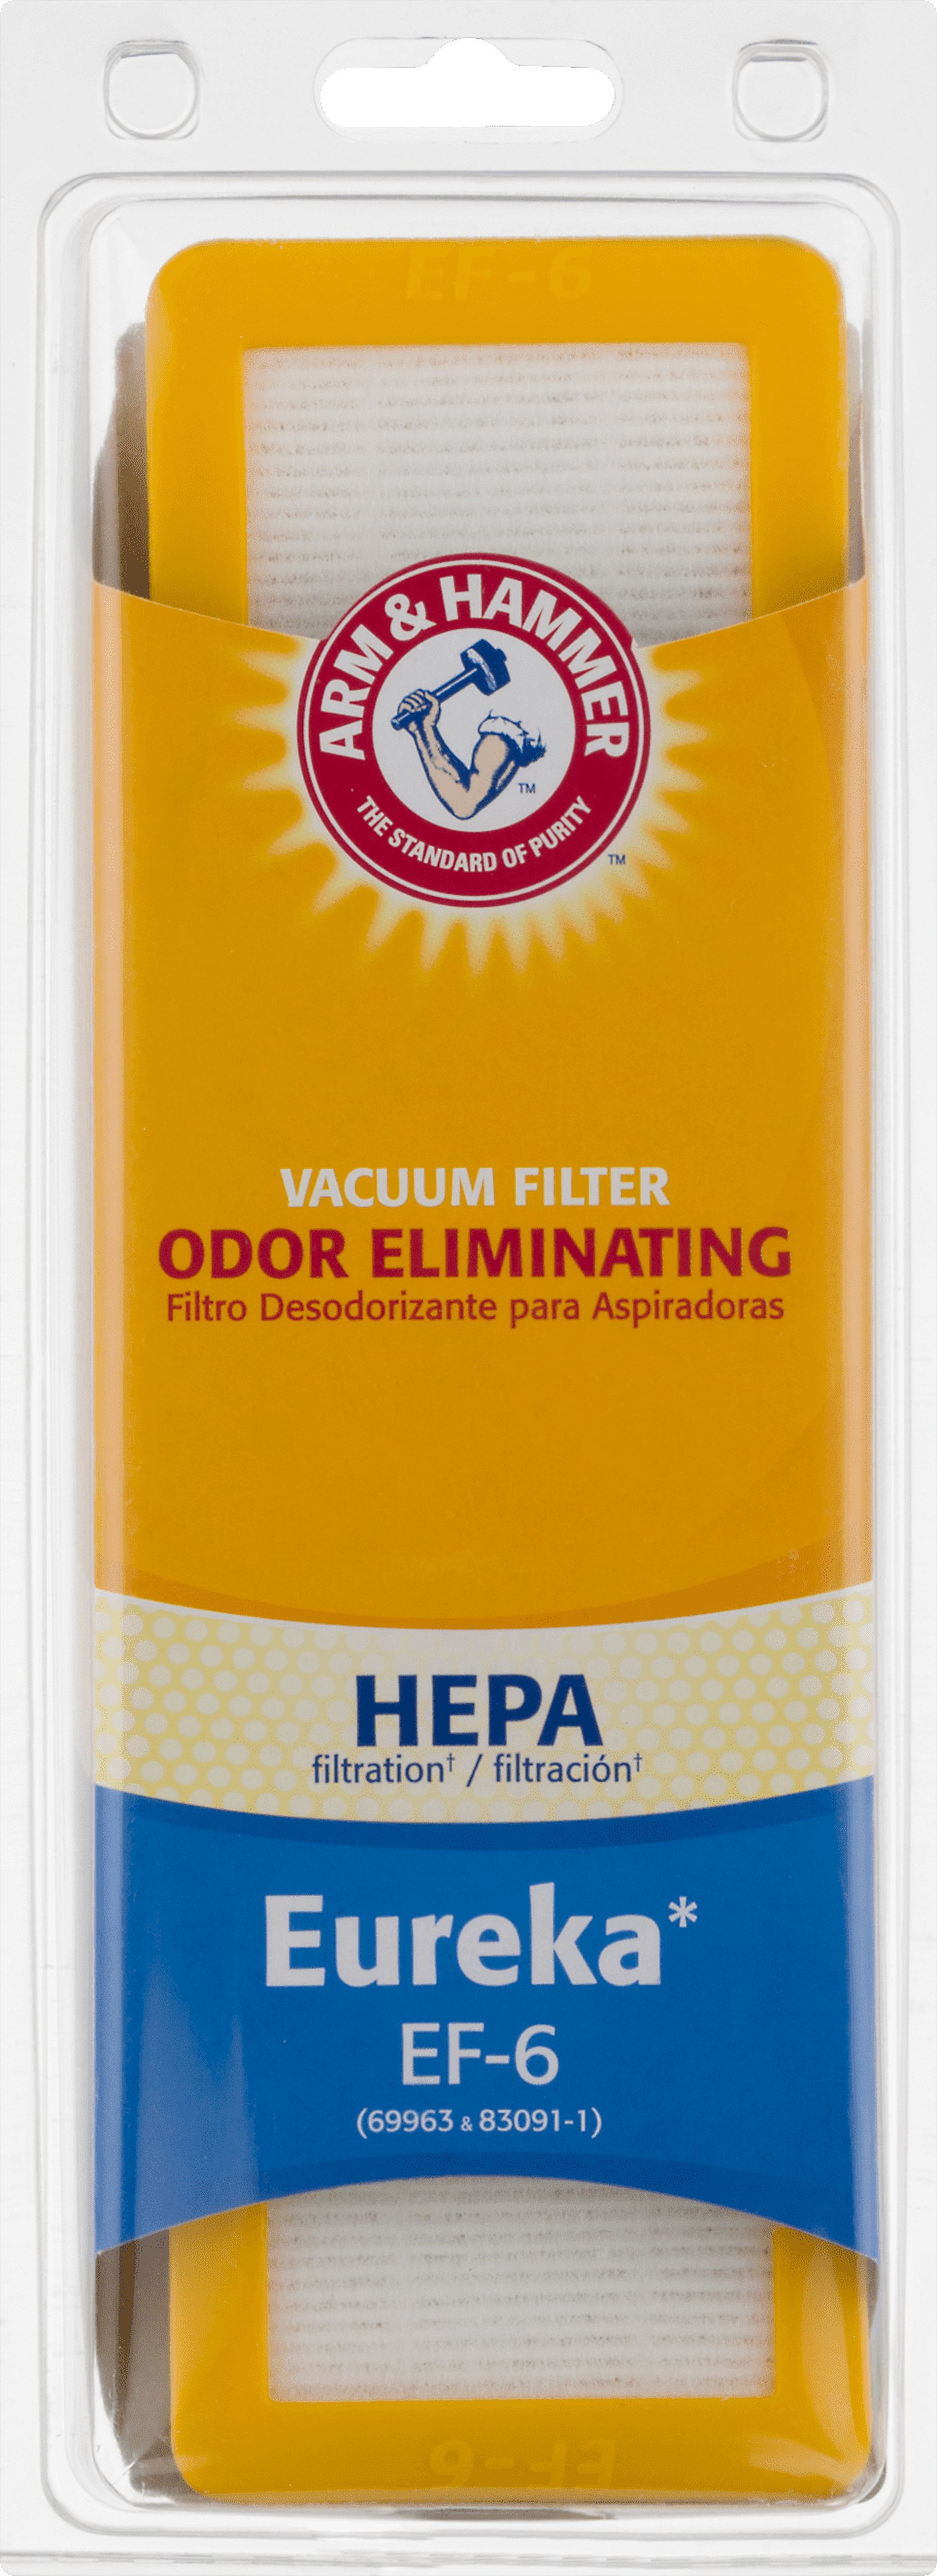 Arm & Hammer Odor-Eliminating HEPA Vacuum Filters for AirSpeed, Eureka EF-6 - image 4 of 5